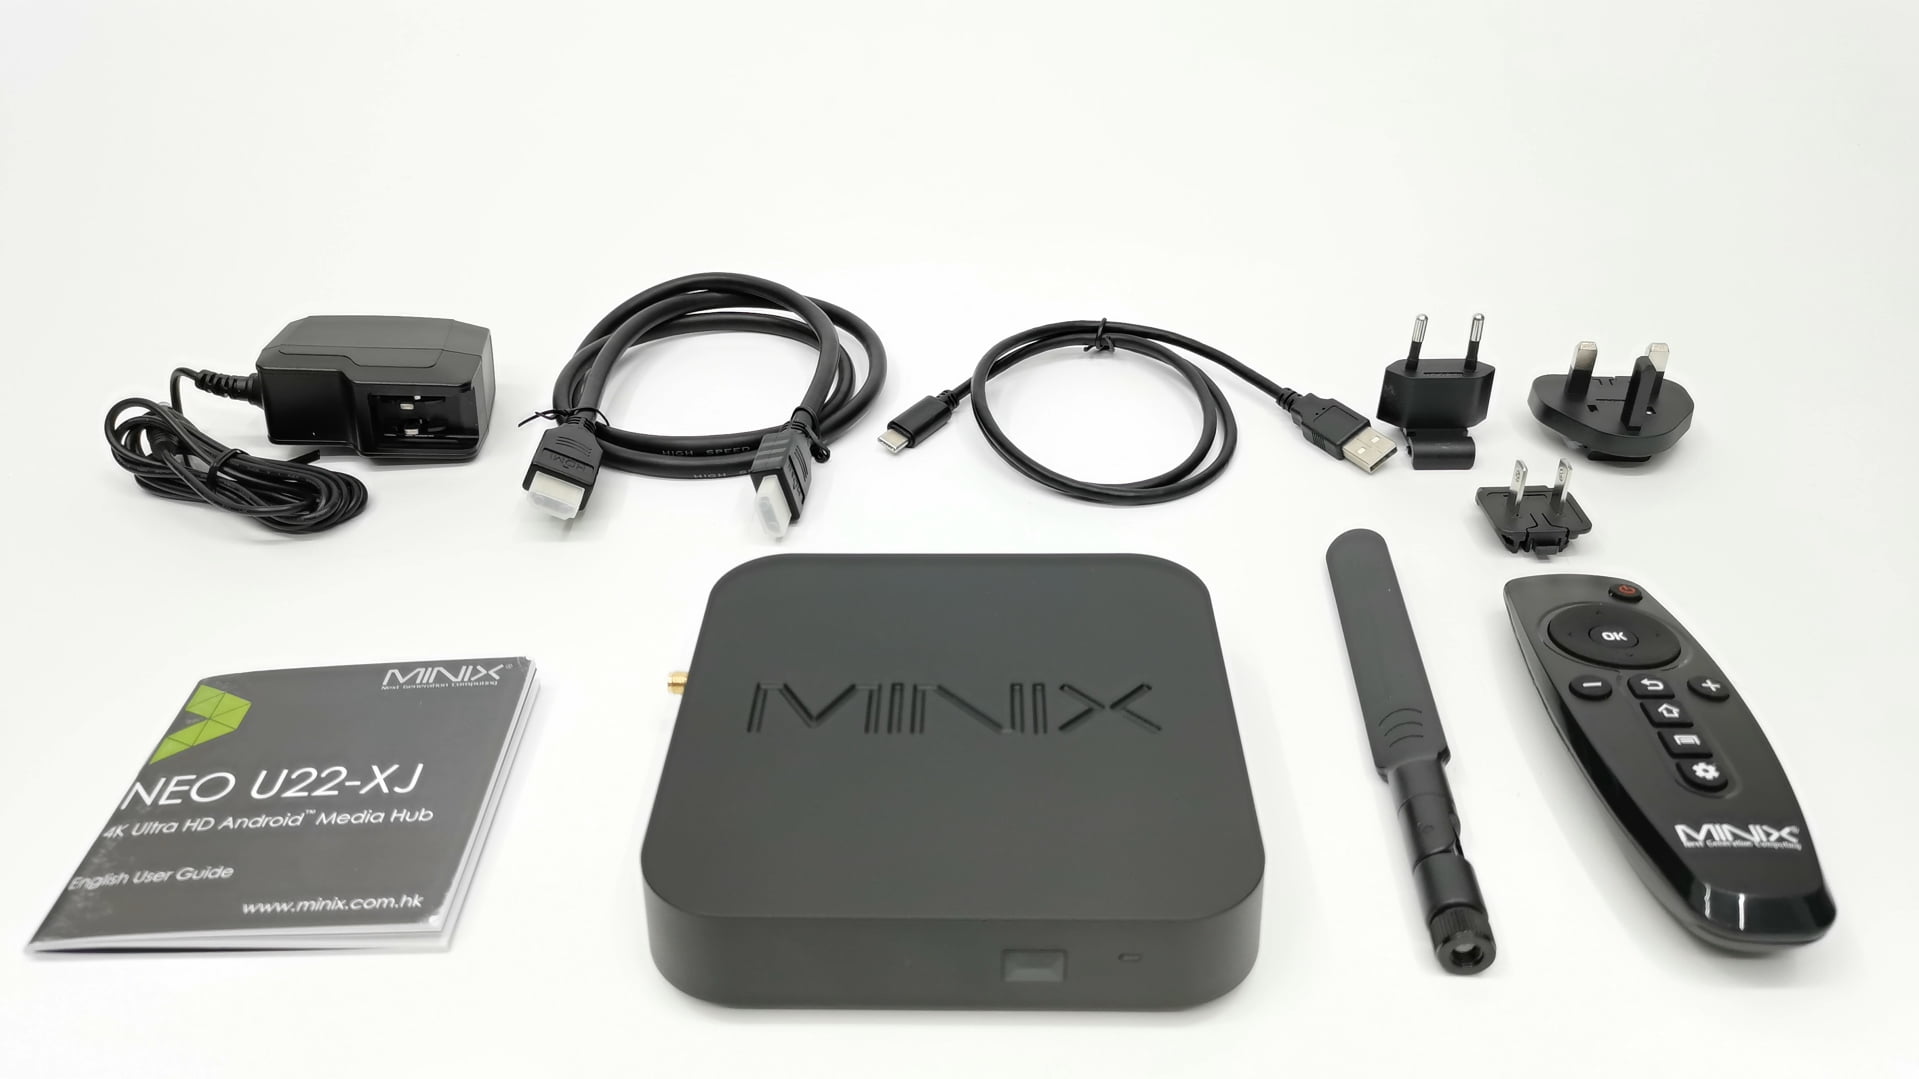 Minix Neo U22 XJ In The Box